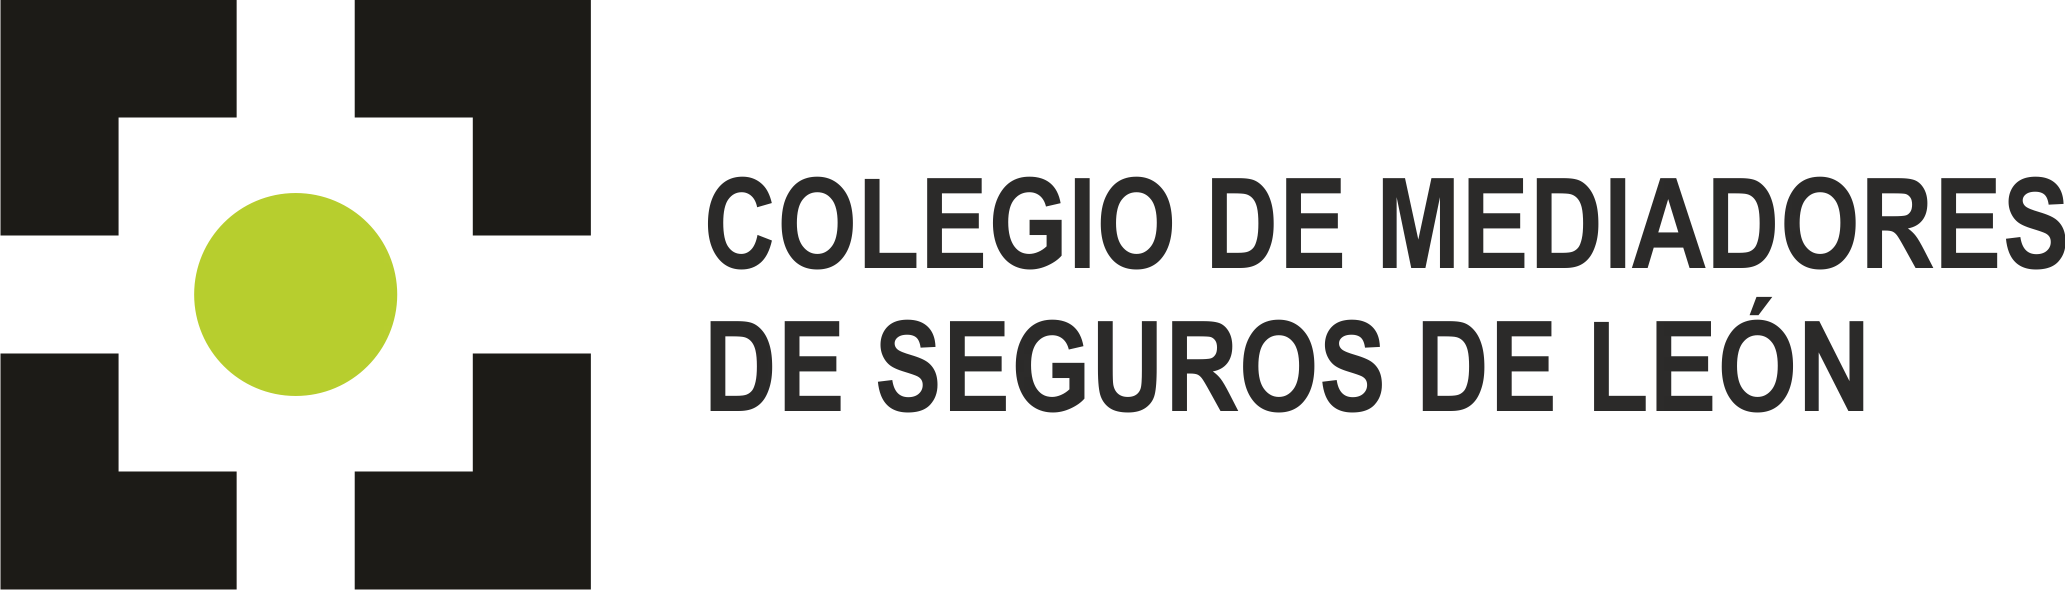 Colegio Mediadores de Seguros de León